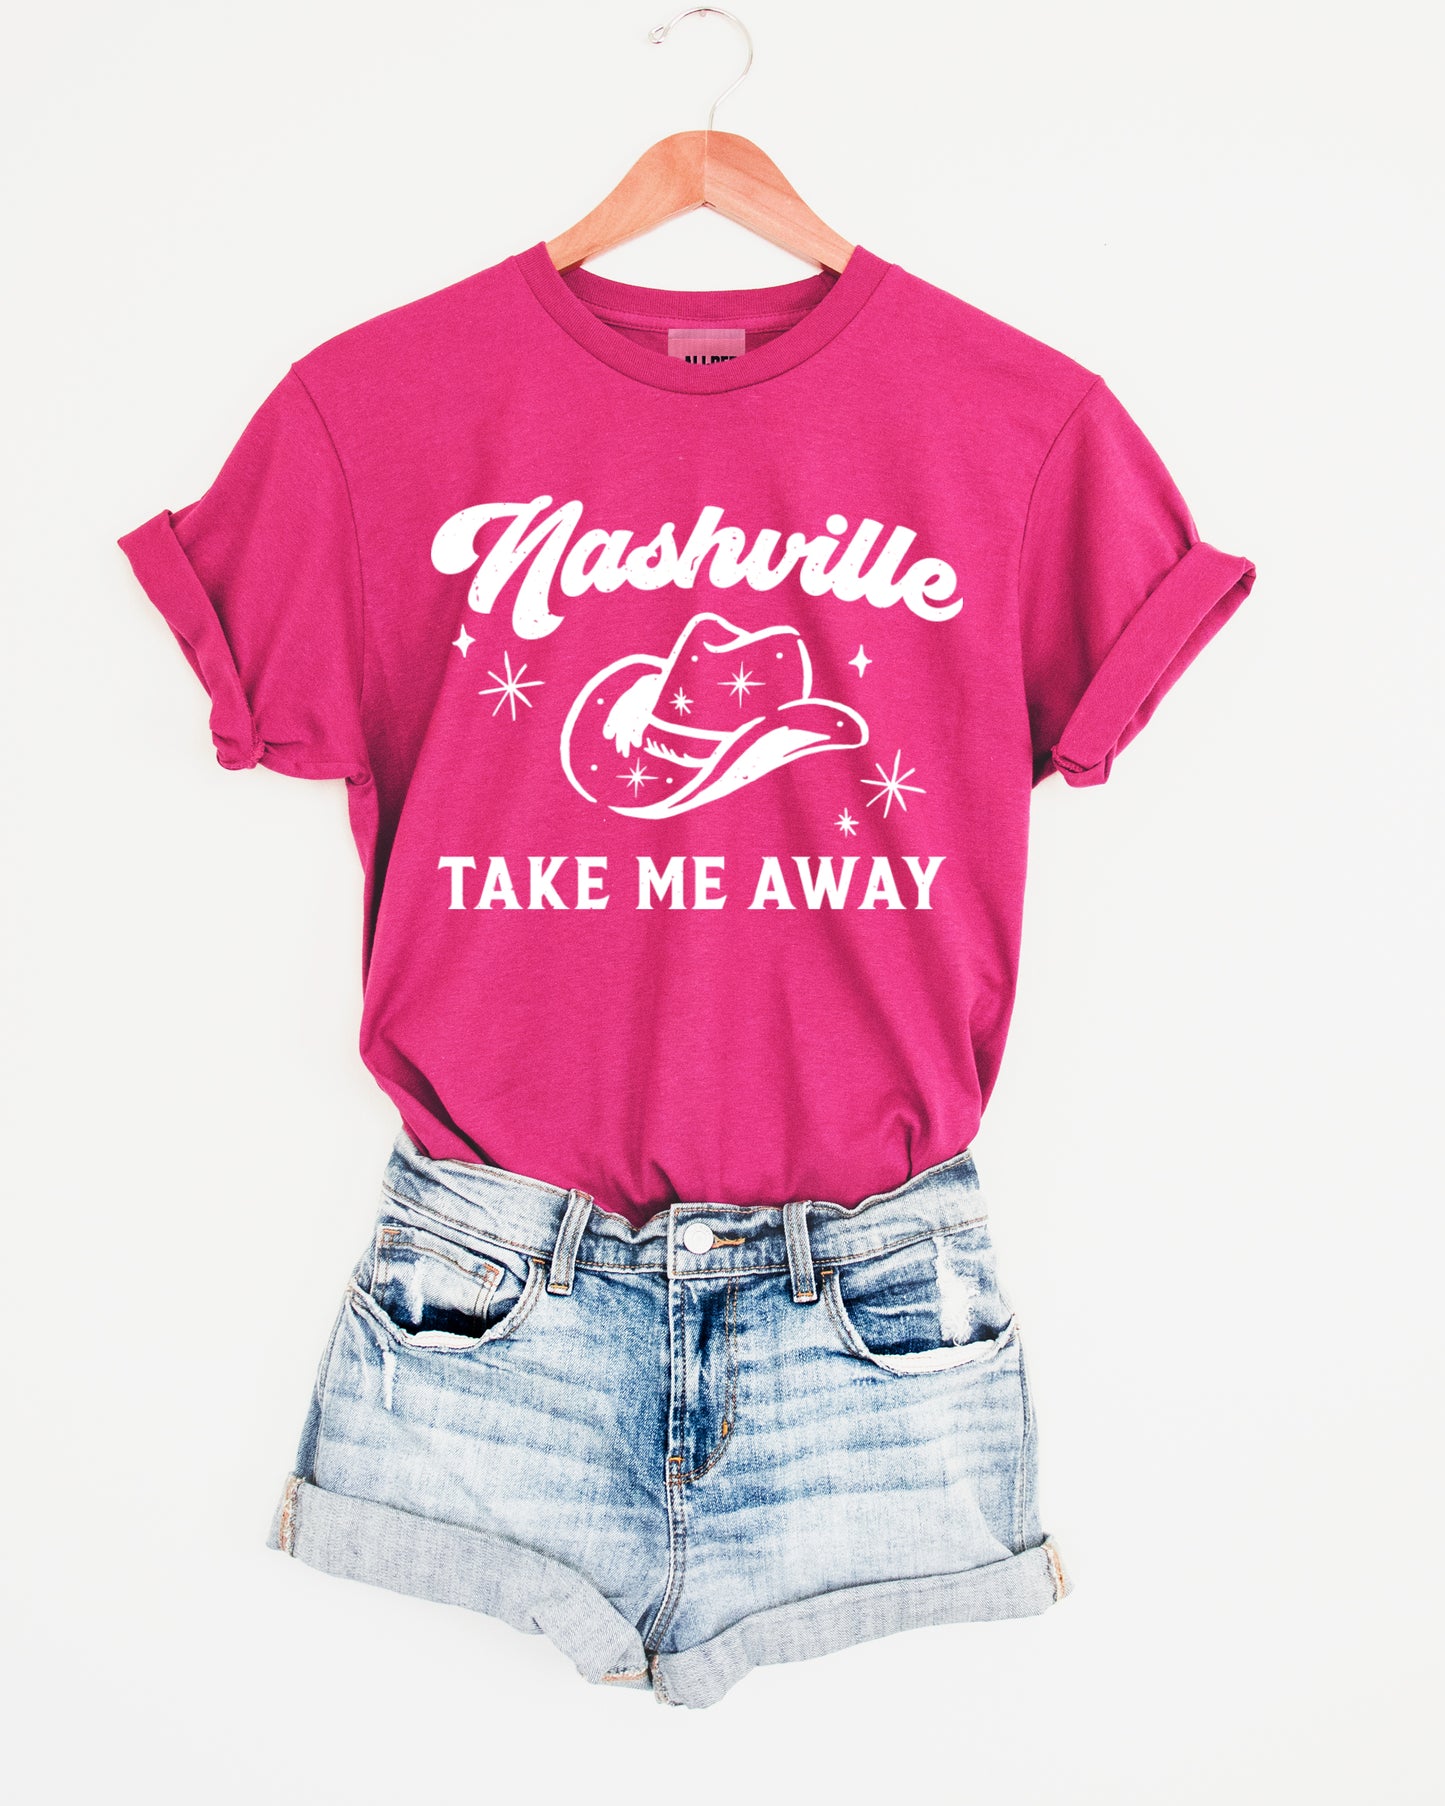 Nashville Take Me Away Graphic Tee - Fuchsia